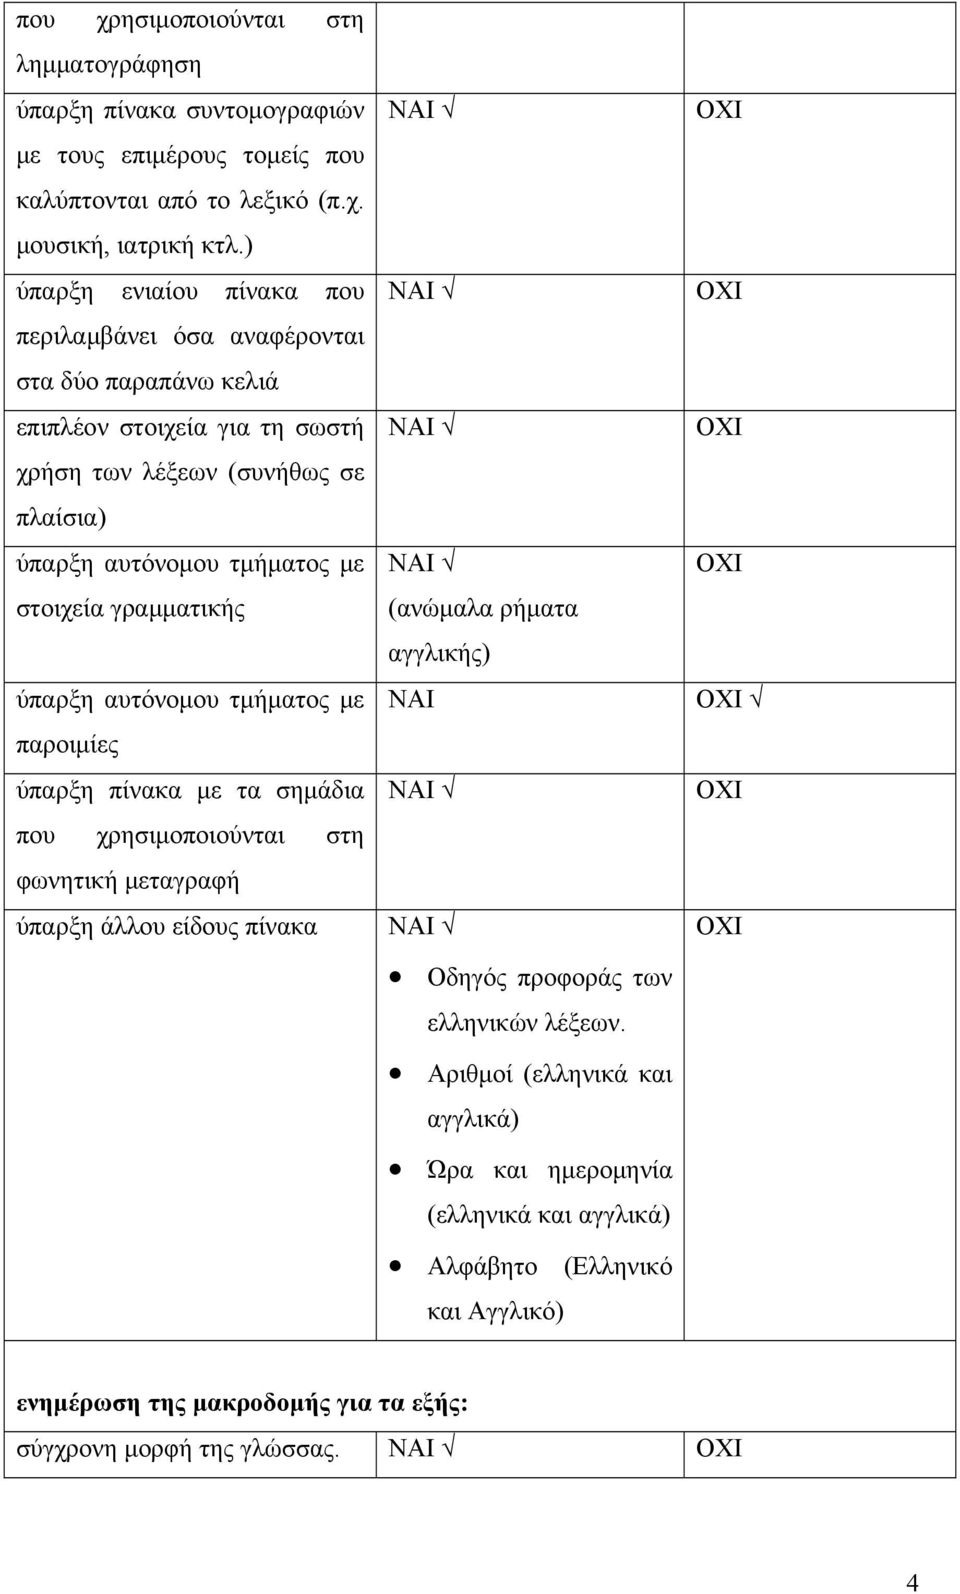 στοιχεία γραμματικής ύπαρξη αυτόνομου τμήματος με παροιμίες ύπαρξη πίνακα με τα σημάδια που χρησιμοποιούνται στη φωνητική μεταγραφή ύπαρξη άλλου είδους πίνακα (ανώμαλα ρήματα